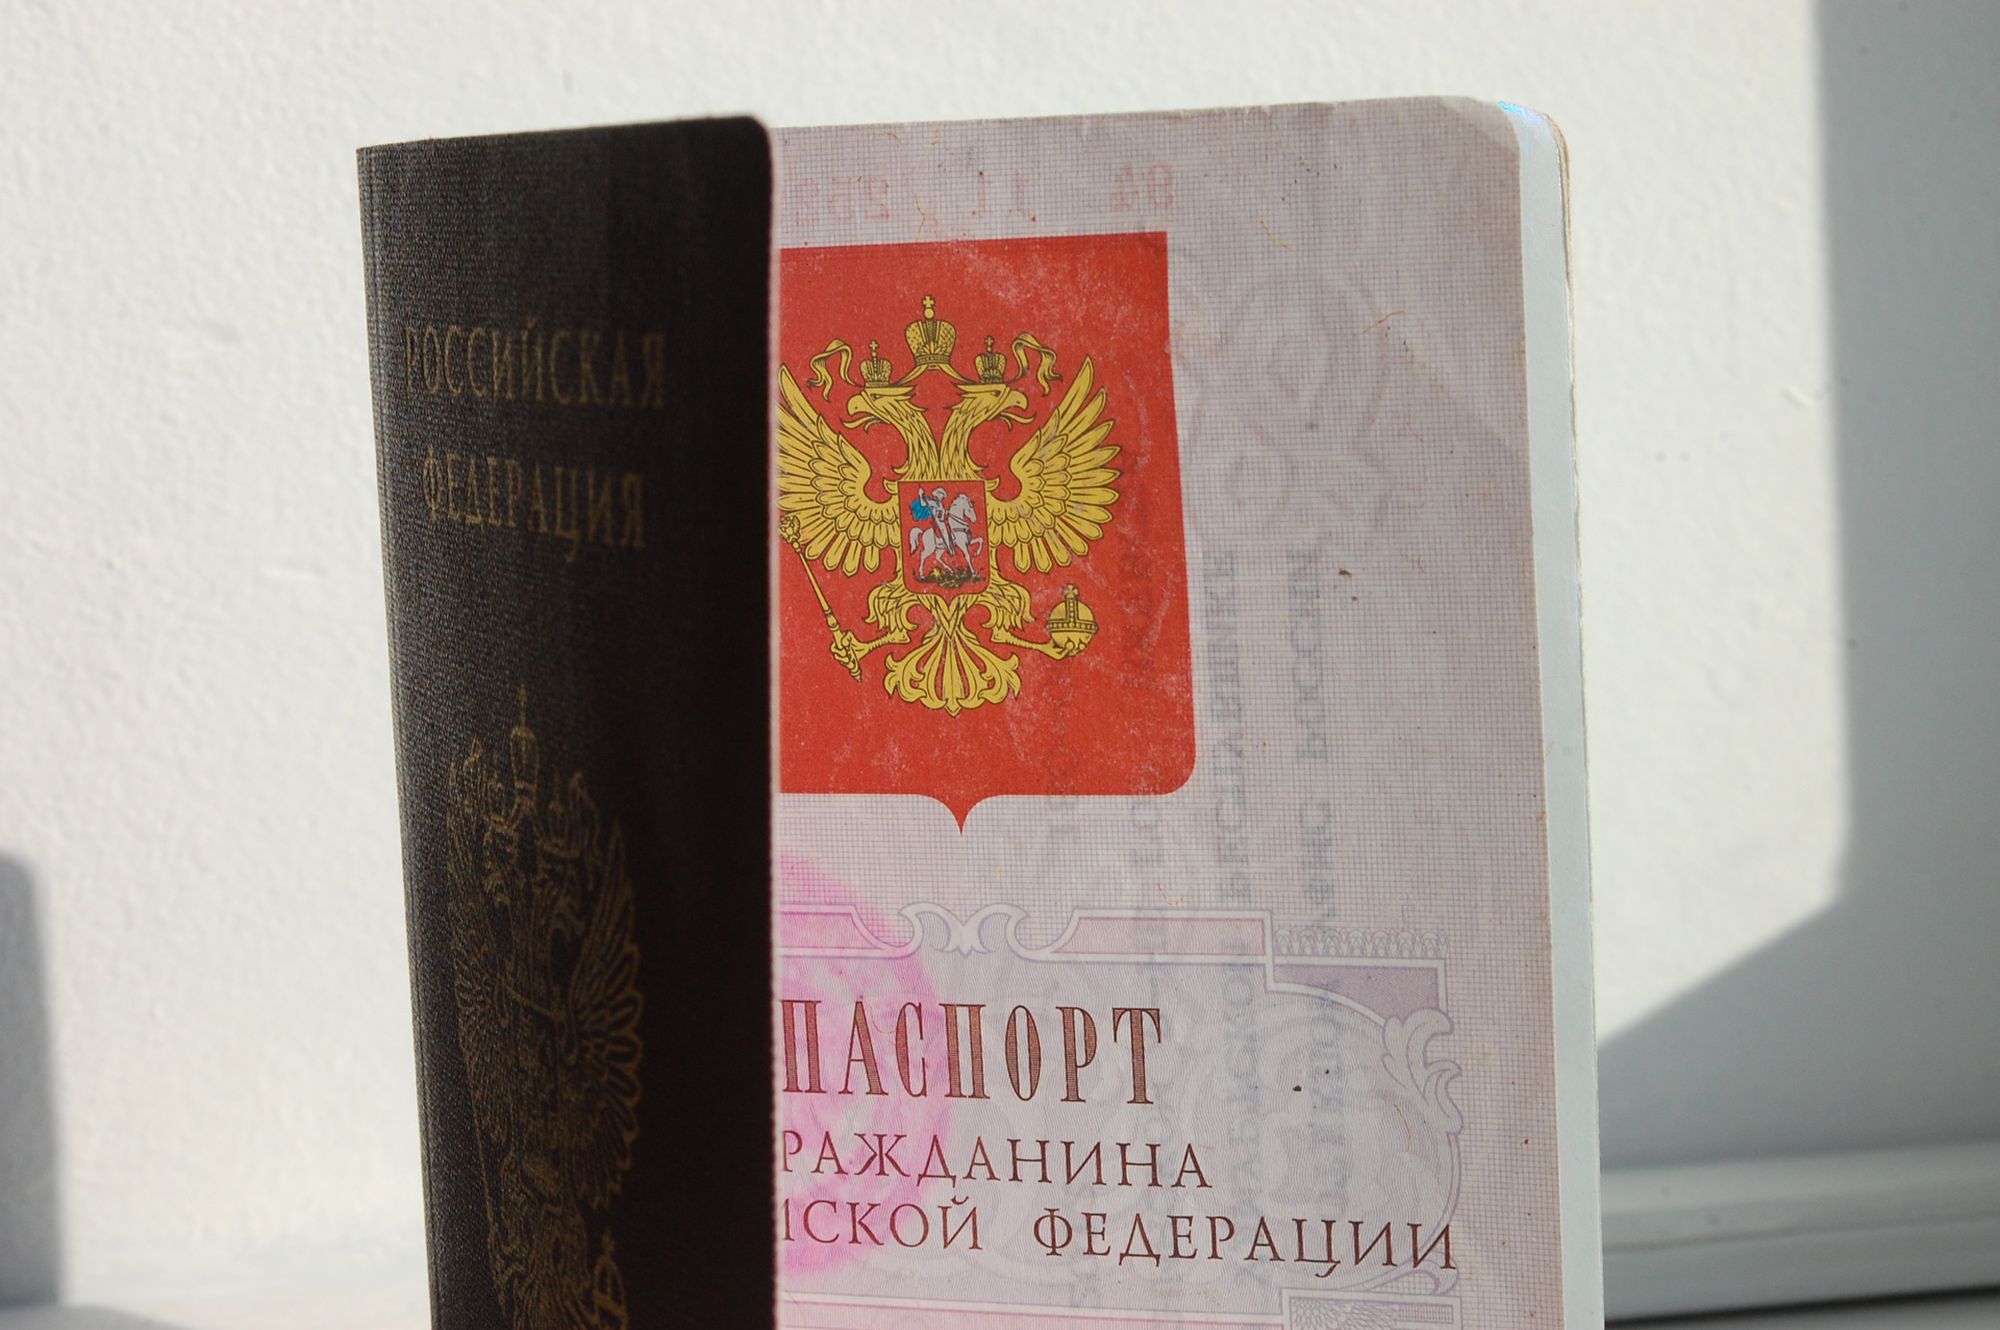 Незаконная выдача паспорта гражданина российской федерации